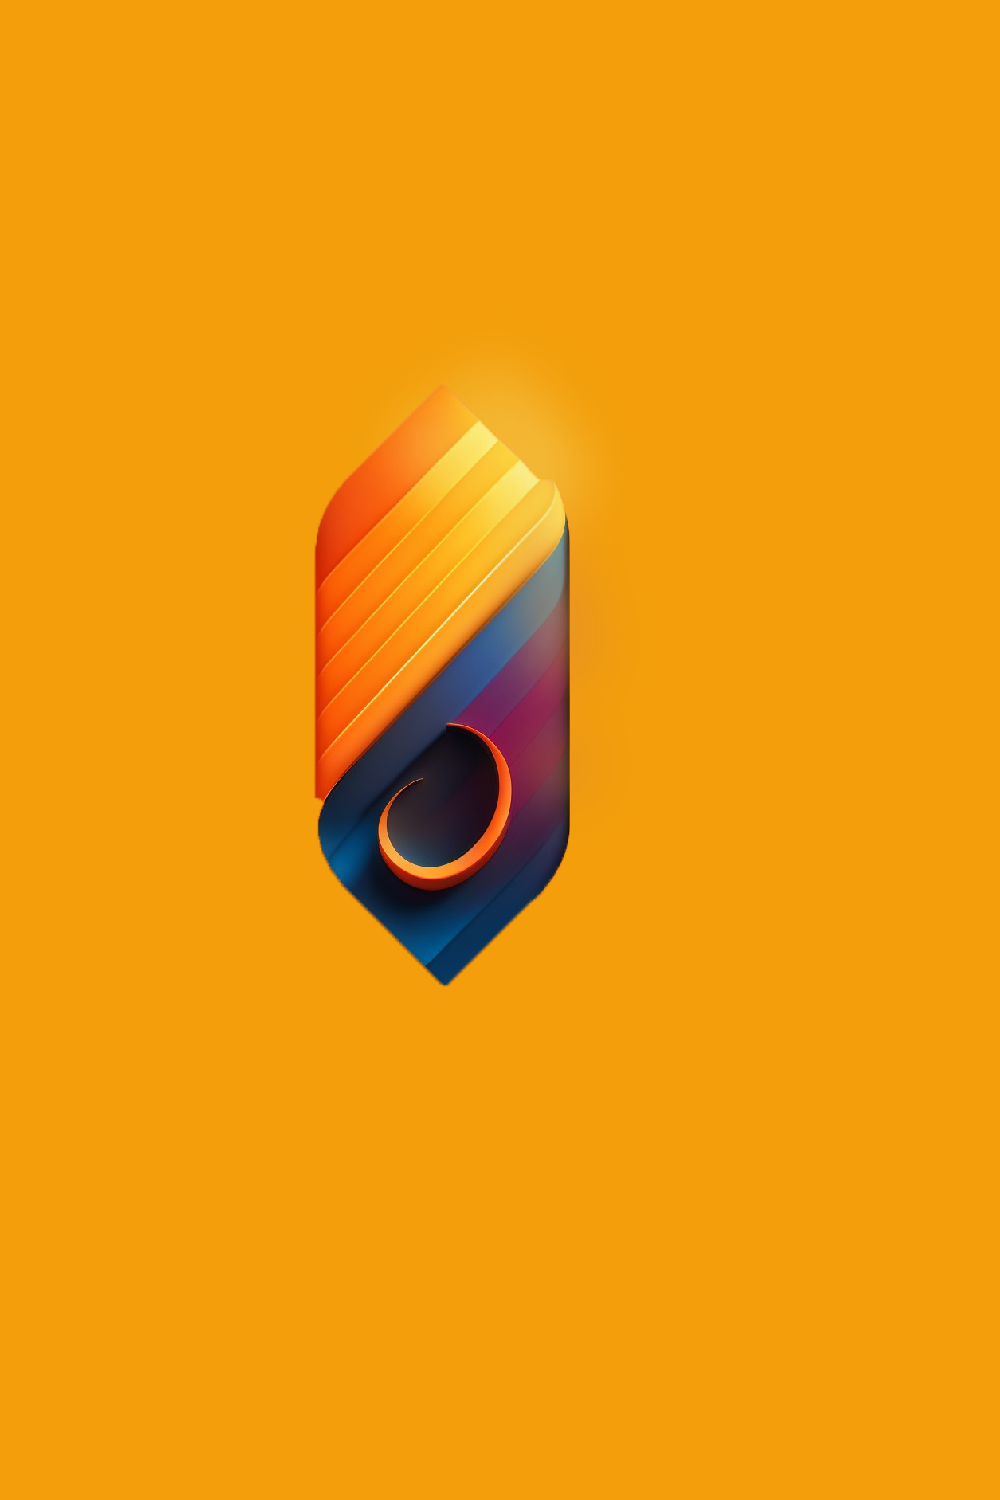 3D custom brand logo pinterest preview image.